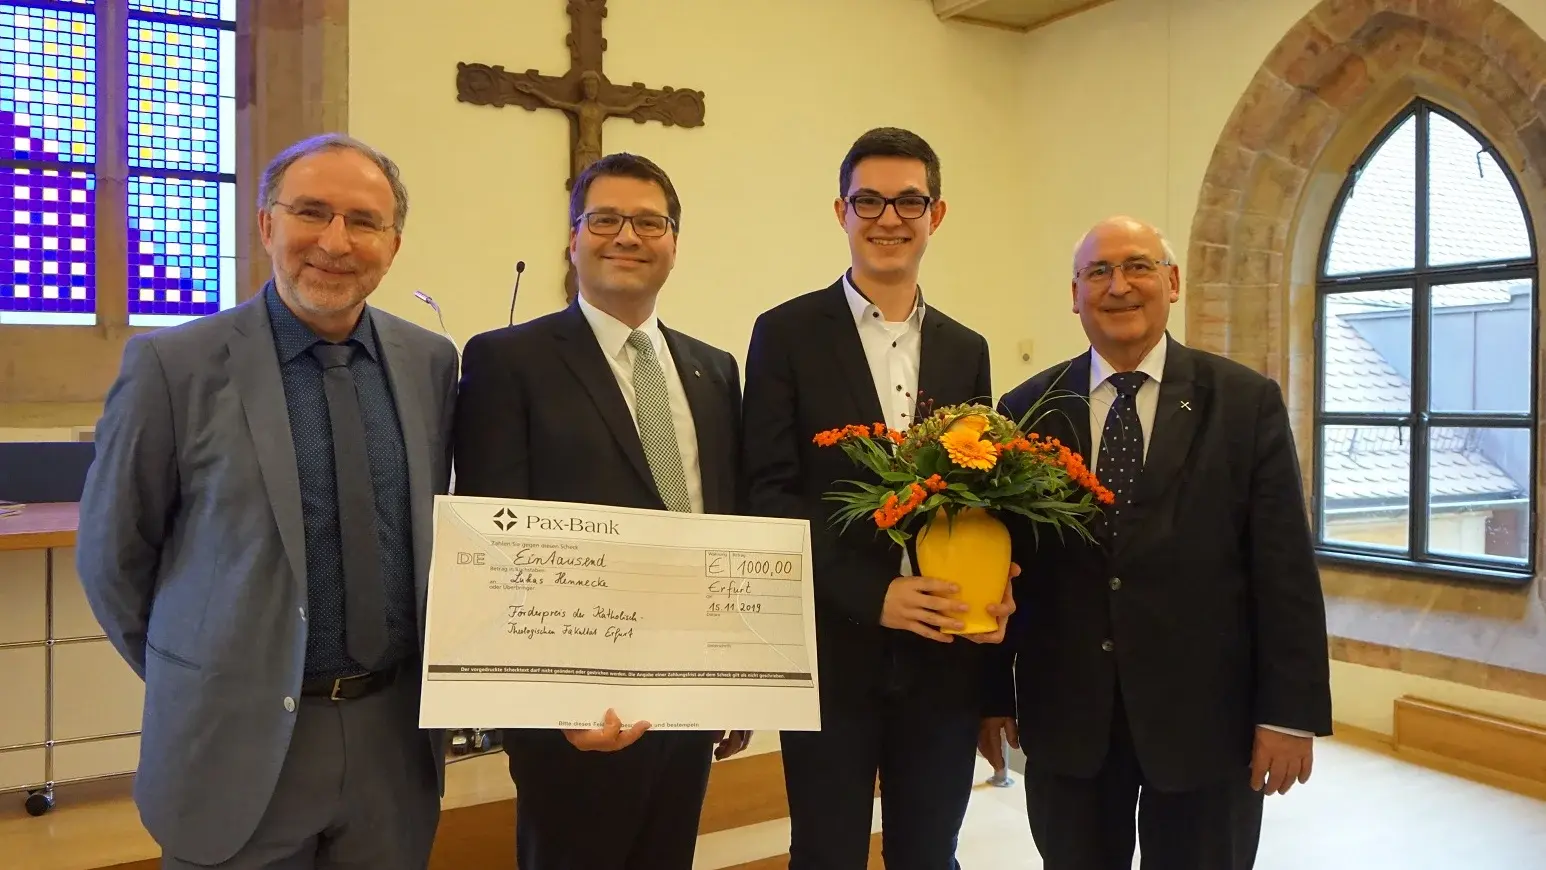  Lukas Hennecke erhält beim Patronatsfest der Katholisch-Theologischen Fakultät der Universität Erfurt, Albertus Magnus, 2019 den Förderpreis